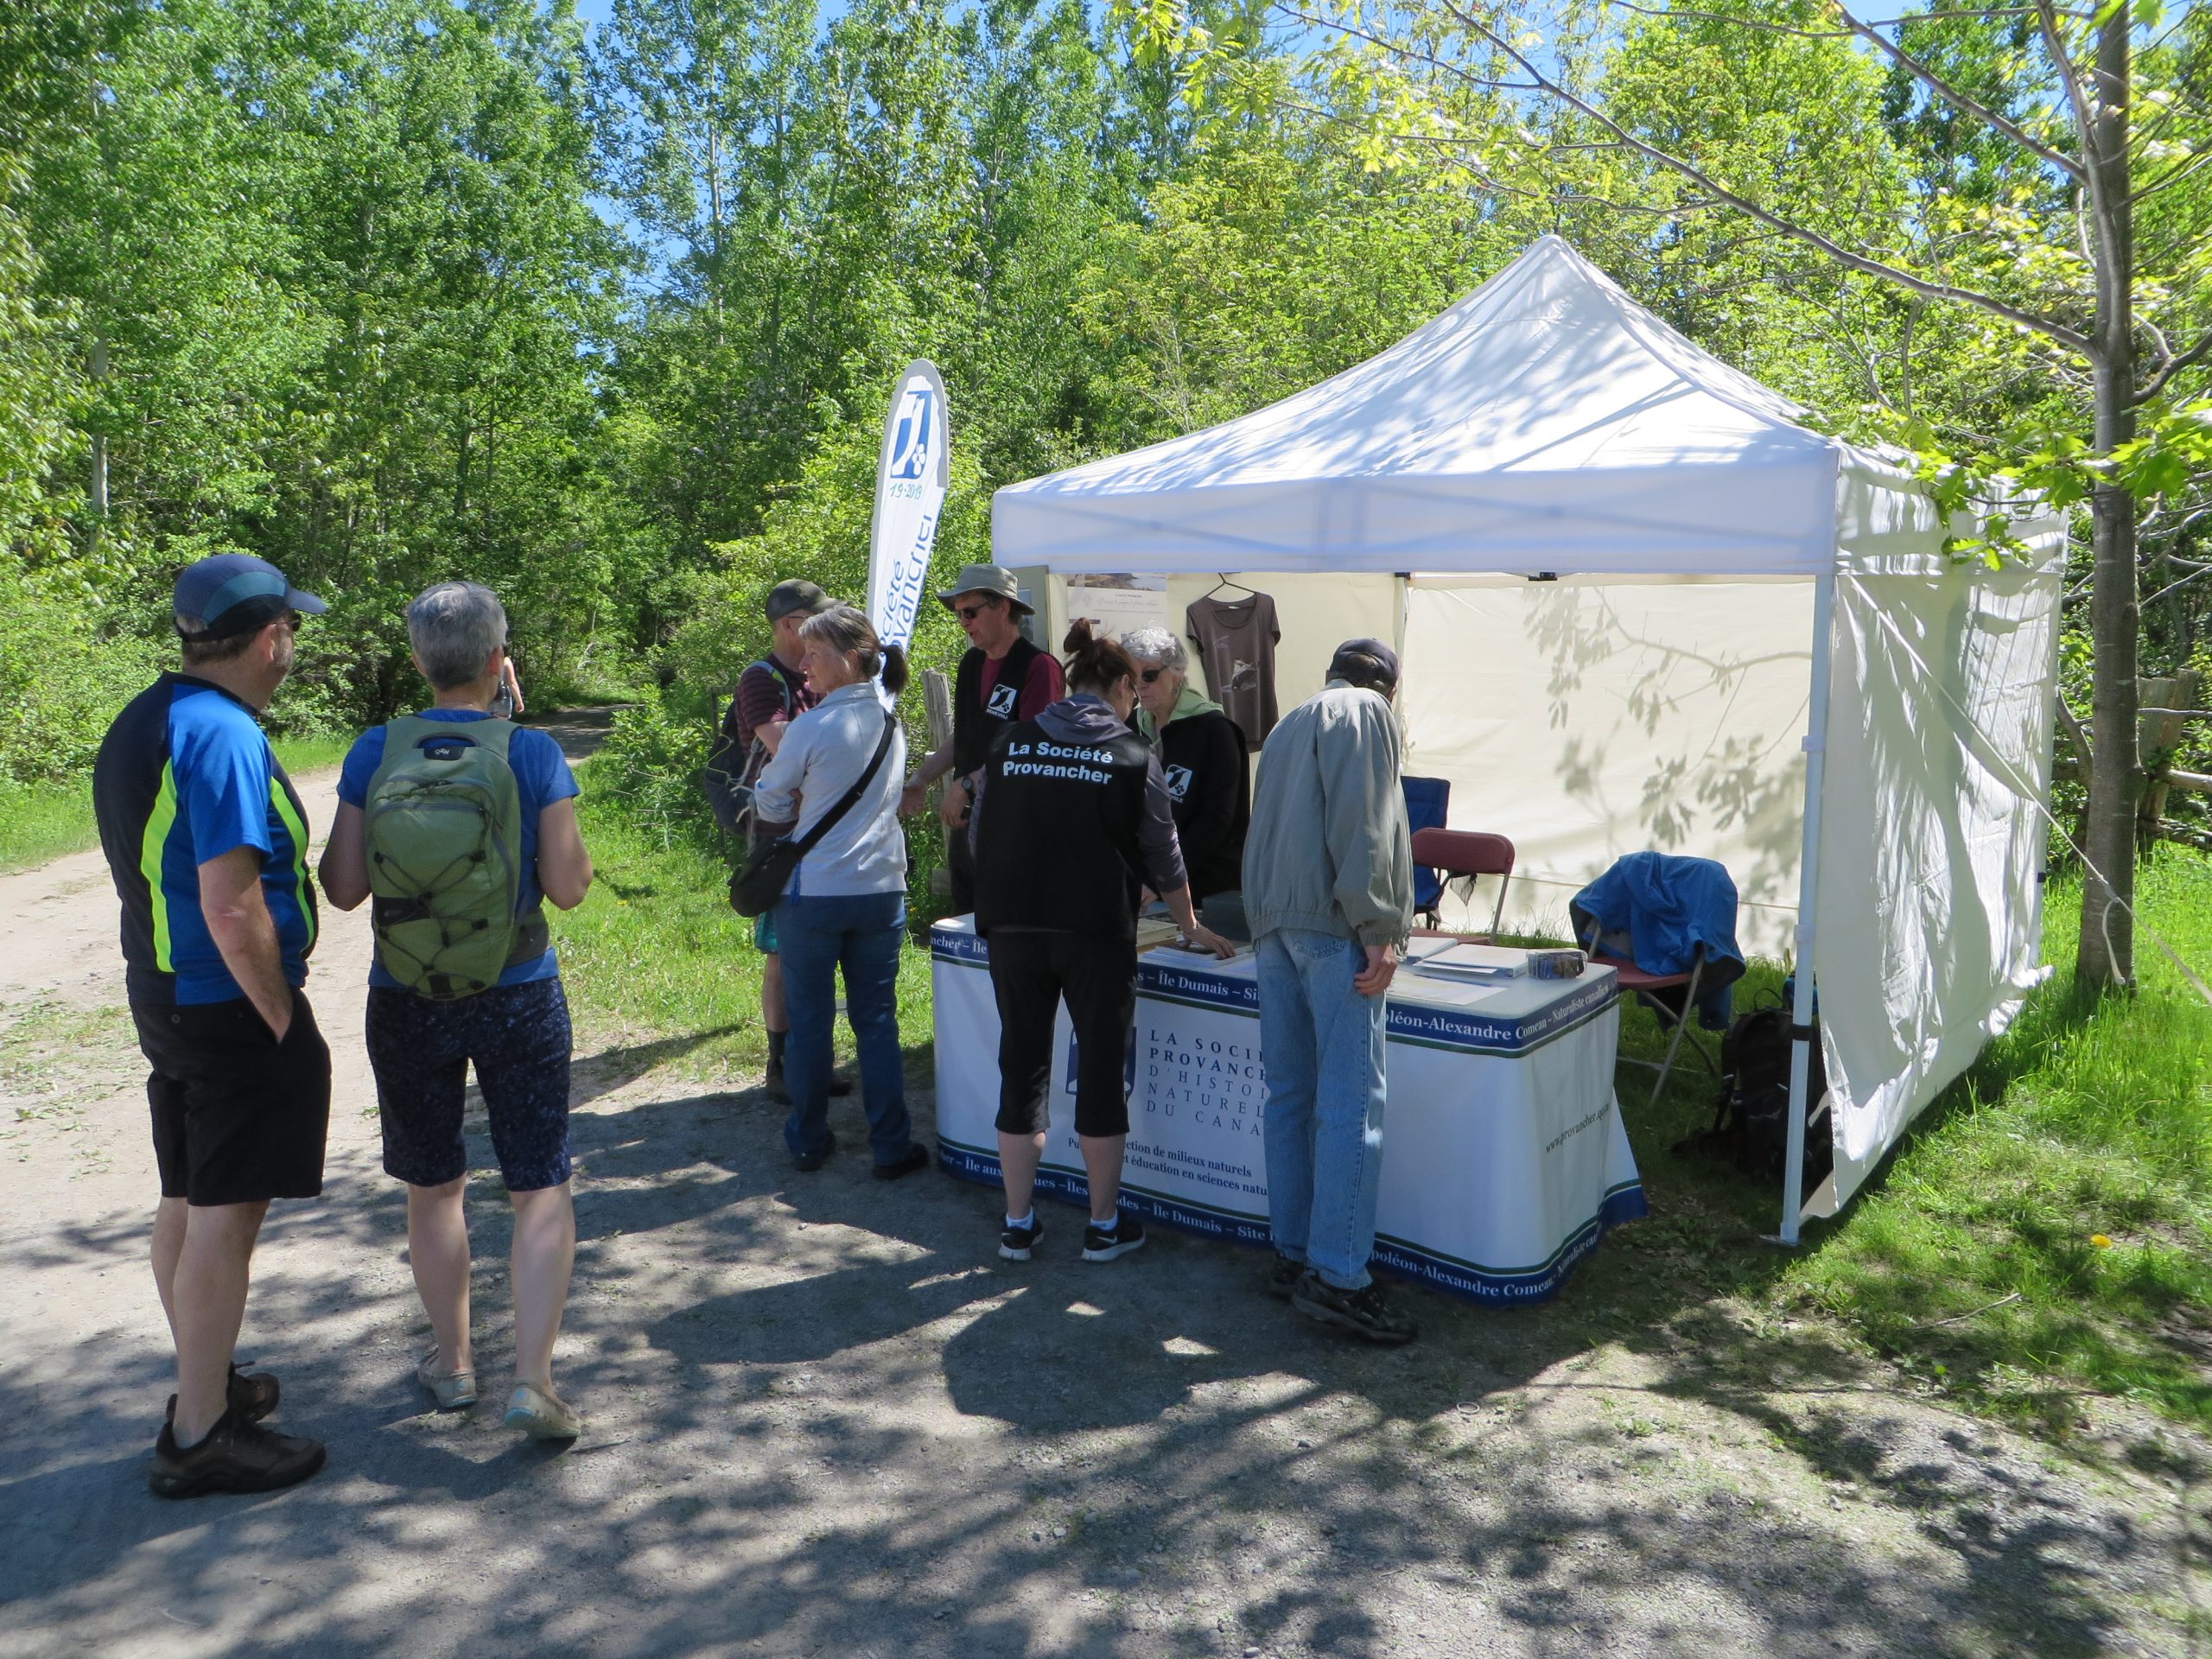 Accueil des visiteurs lors de la Fête des voisins "Charmants voisins", le 8 juin 2019 à la Réserve naturelle du Marais-Léon-Provancher.